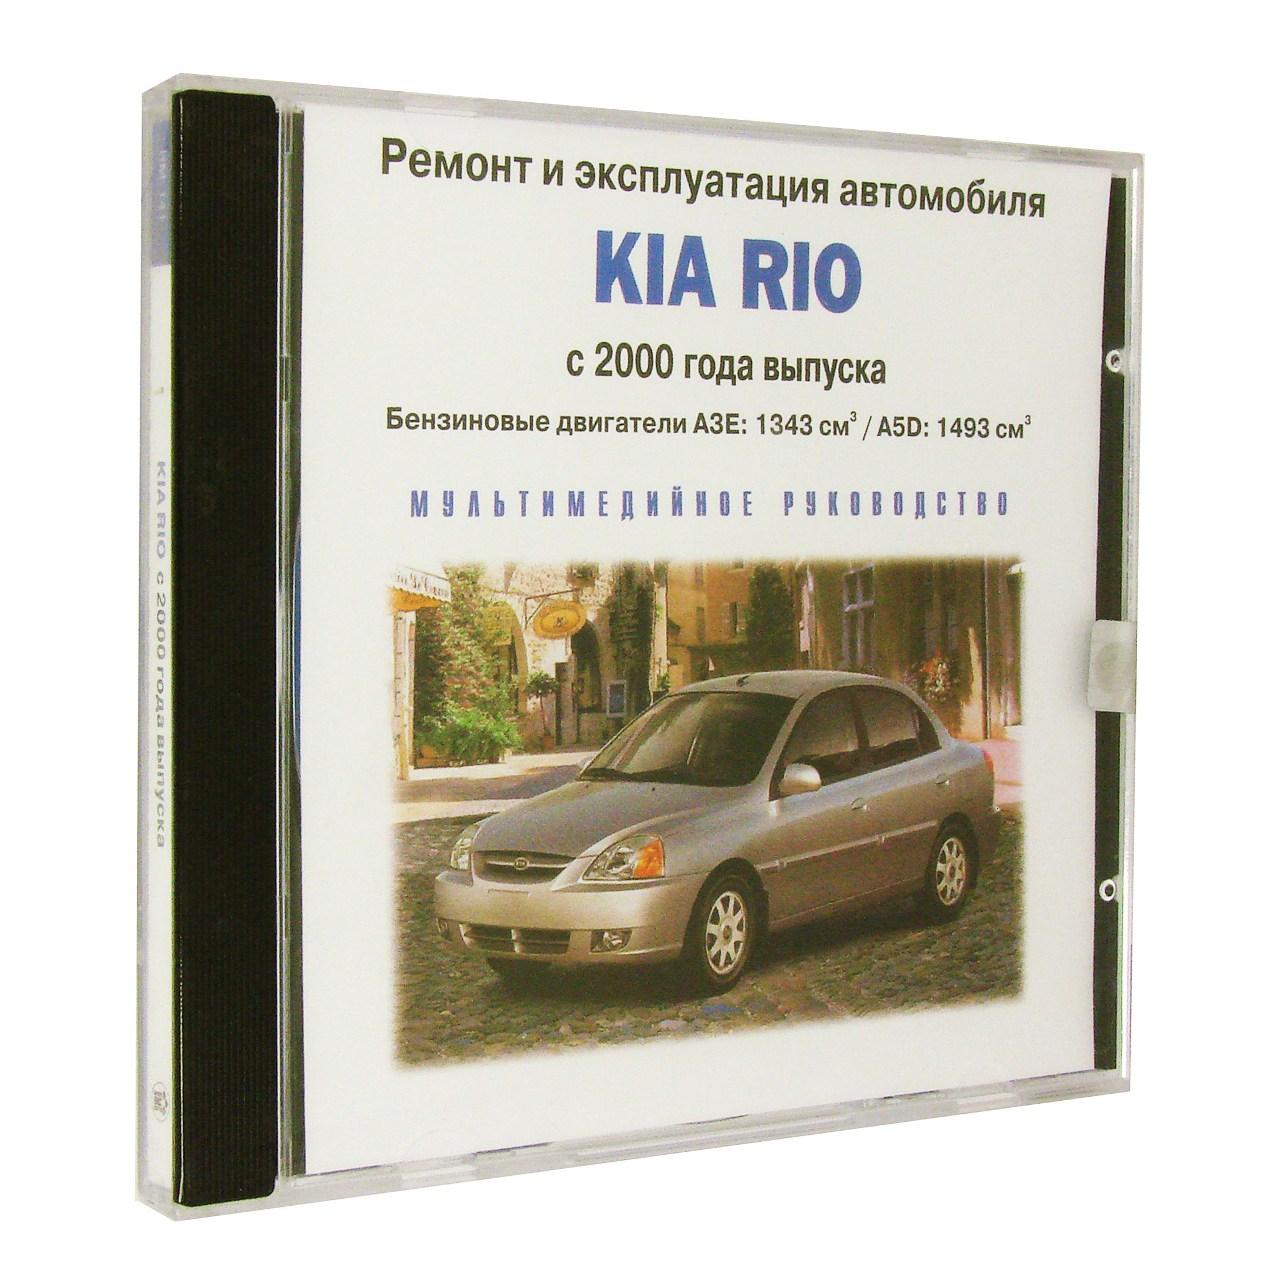 Компьютерный компакт-диск Kia Rio с 2000 Ремонт и эксплуатация автомобиля. (ПК), фирма "RMG Multimedia", 1CD